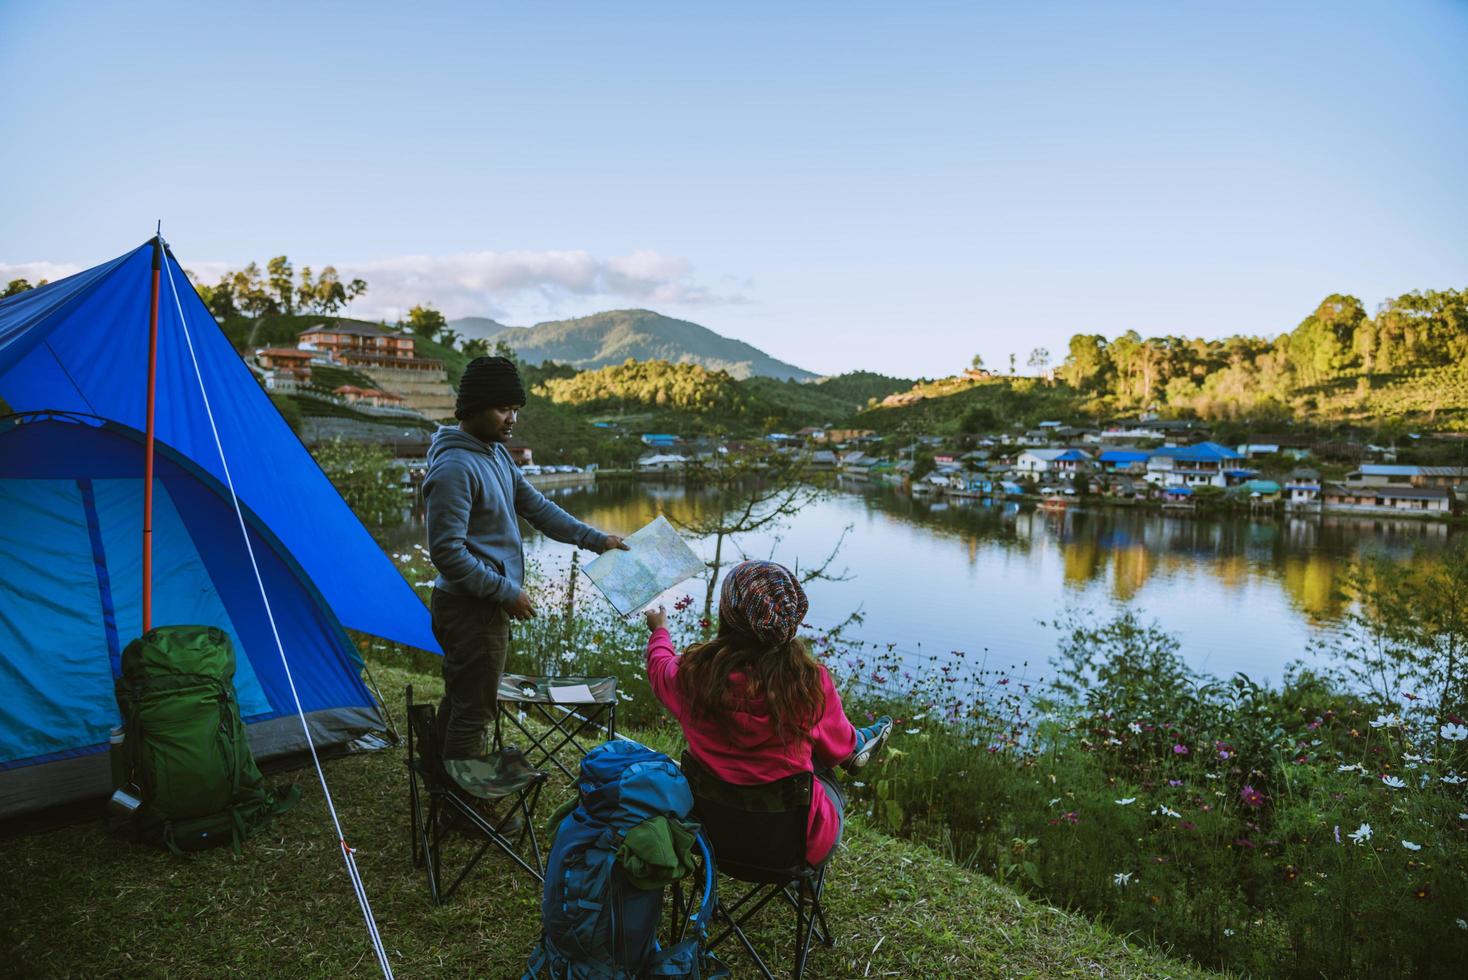 campi di montagna per coppie asiatiche in villaggi rurali, vicino al lago, idee di viaggio, campeggio, vacanze rilassanti.in thailandia foto